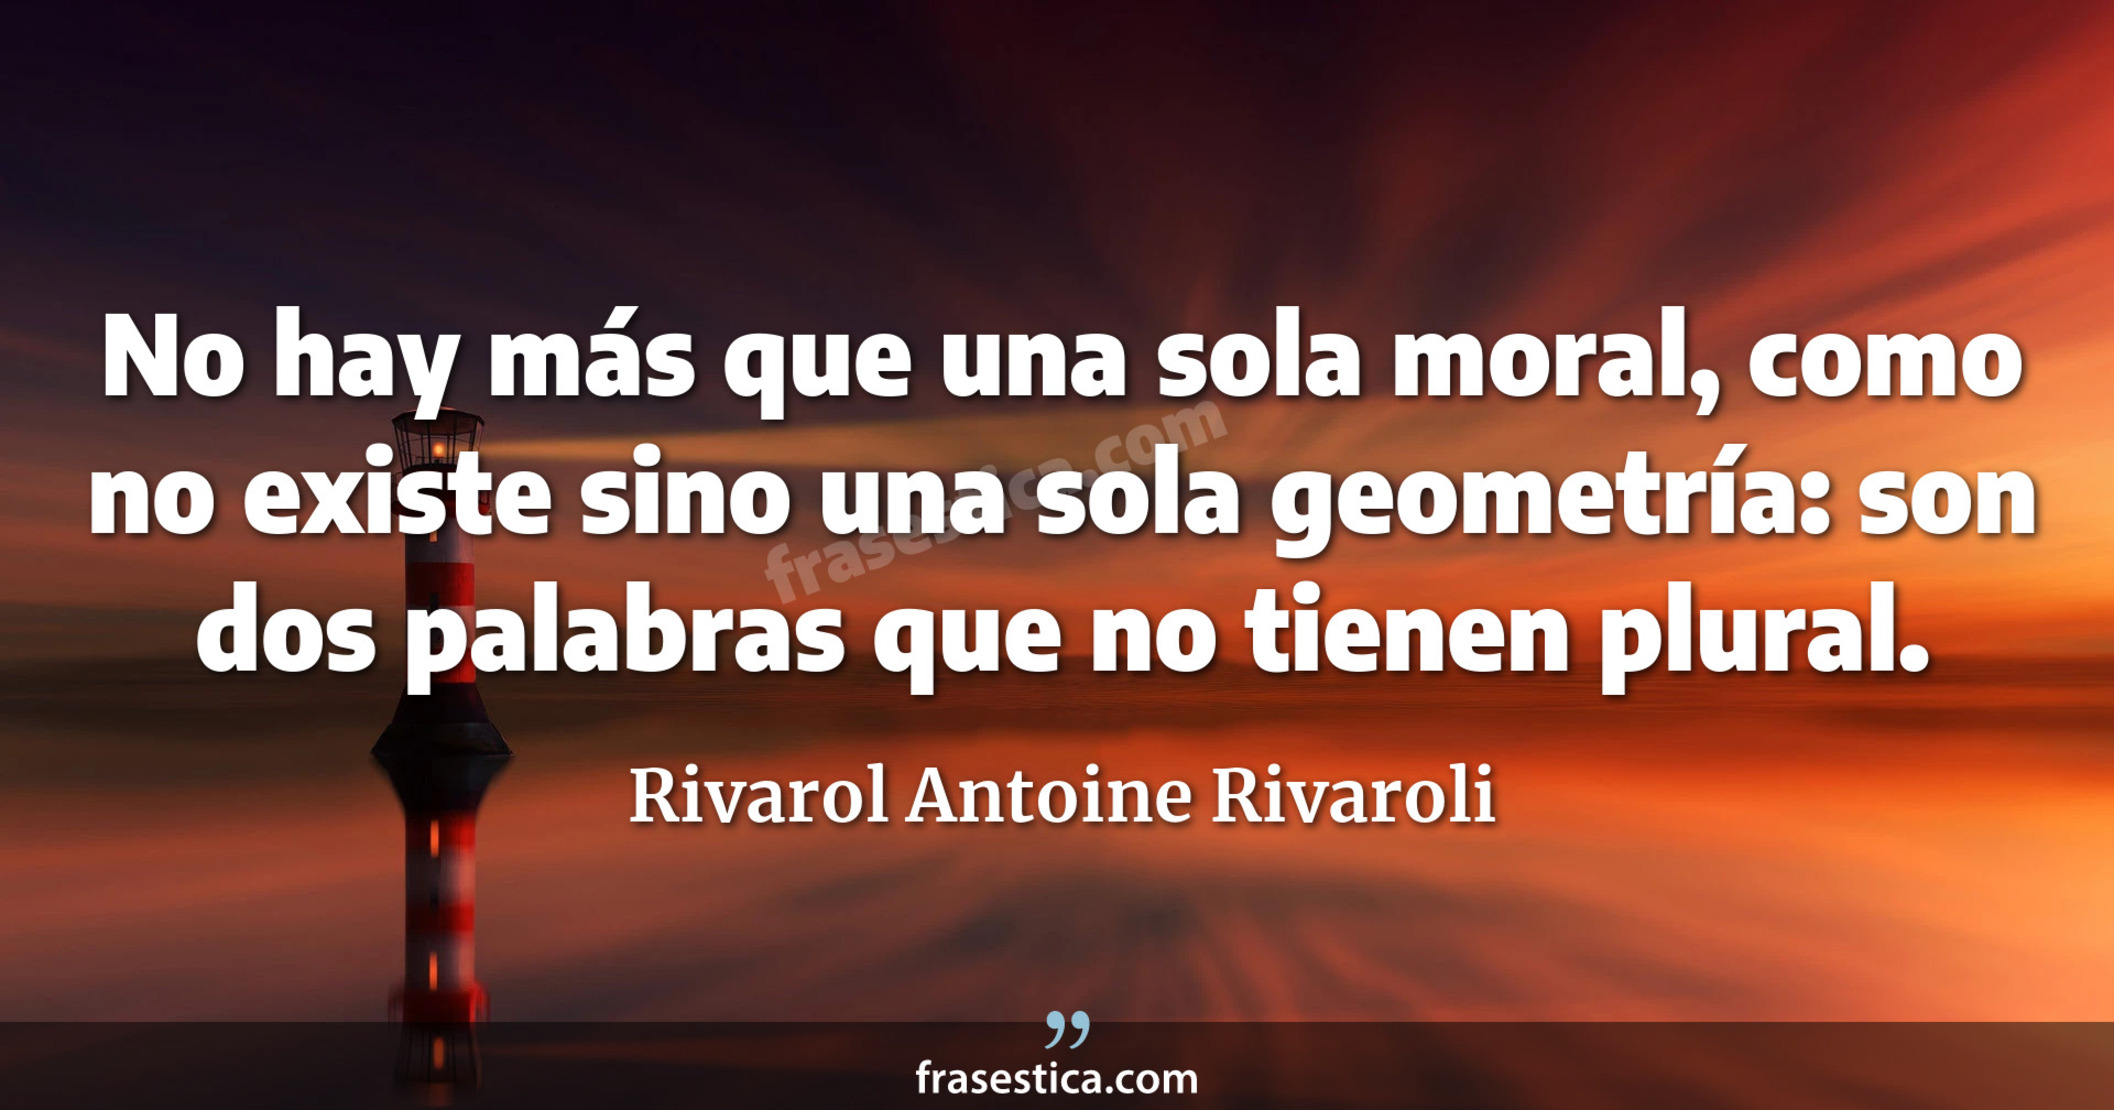 No hay más que una sola moral, como no existe sino una sola geometría: son dos palabras que no tienen plural. - Rivarol Antoine Rivaroli